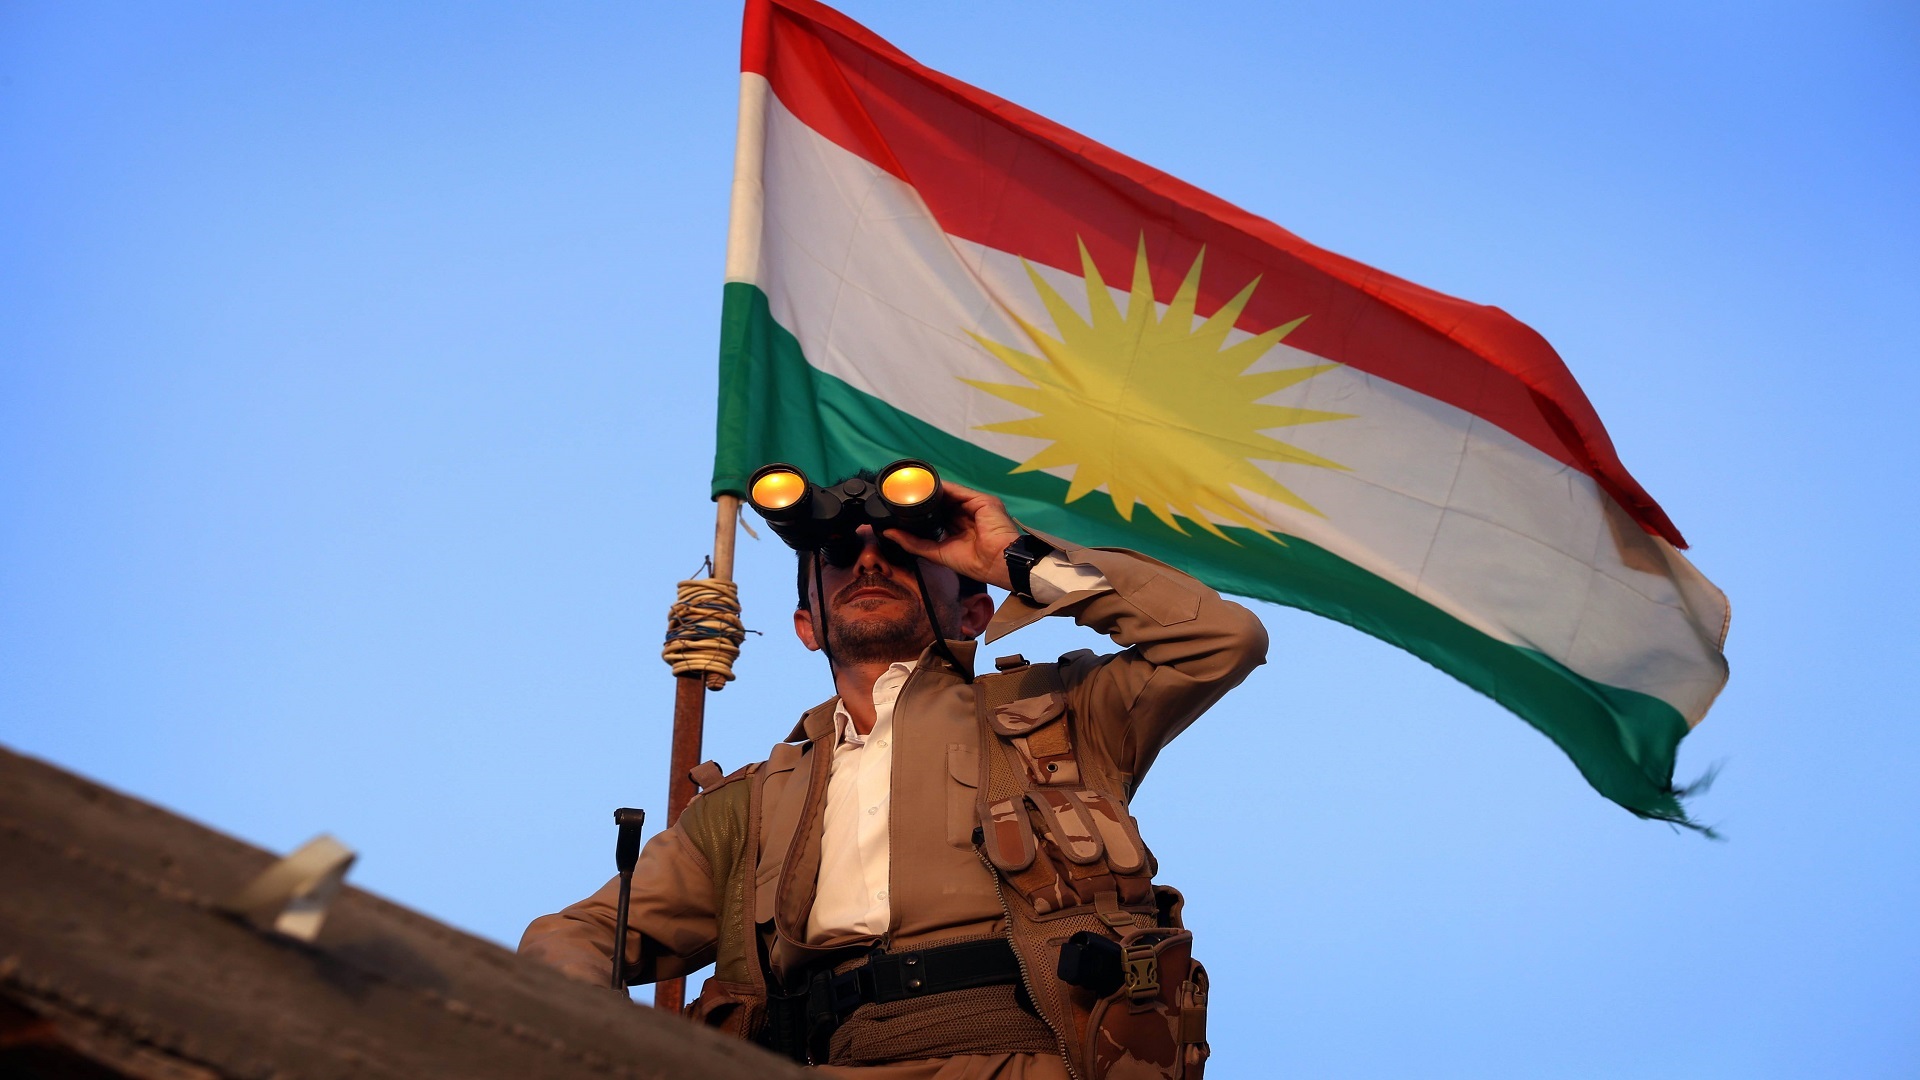 Peshmerga forces secretly trained by Turkey